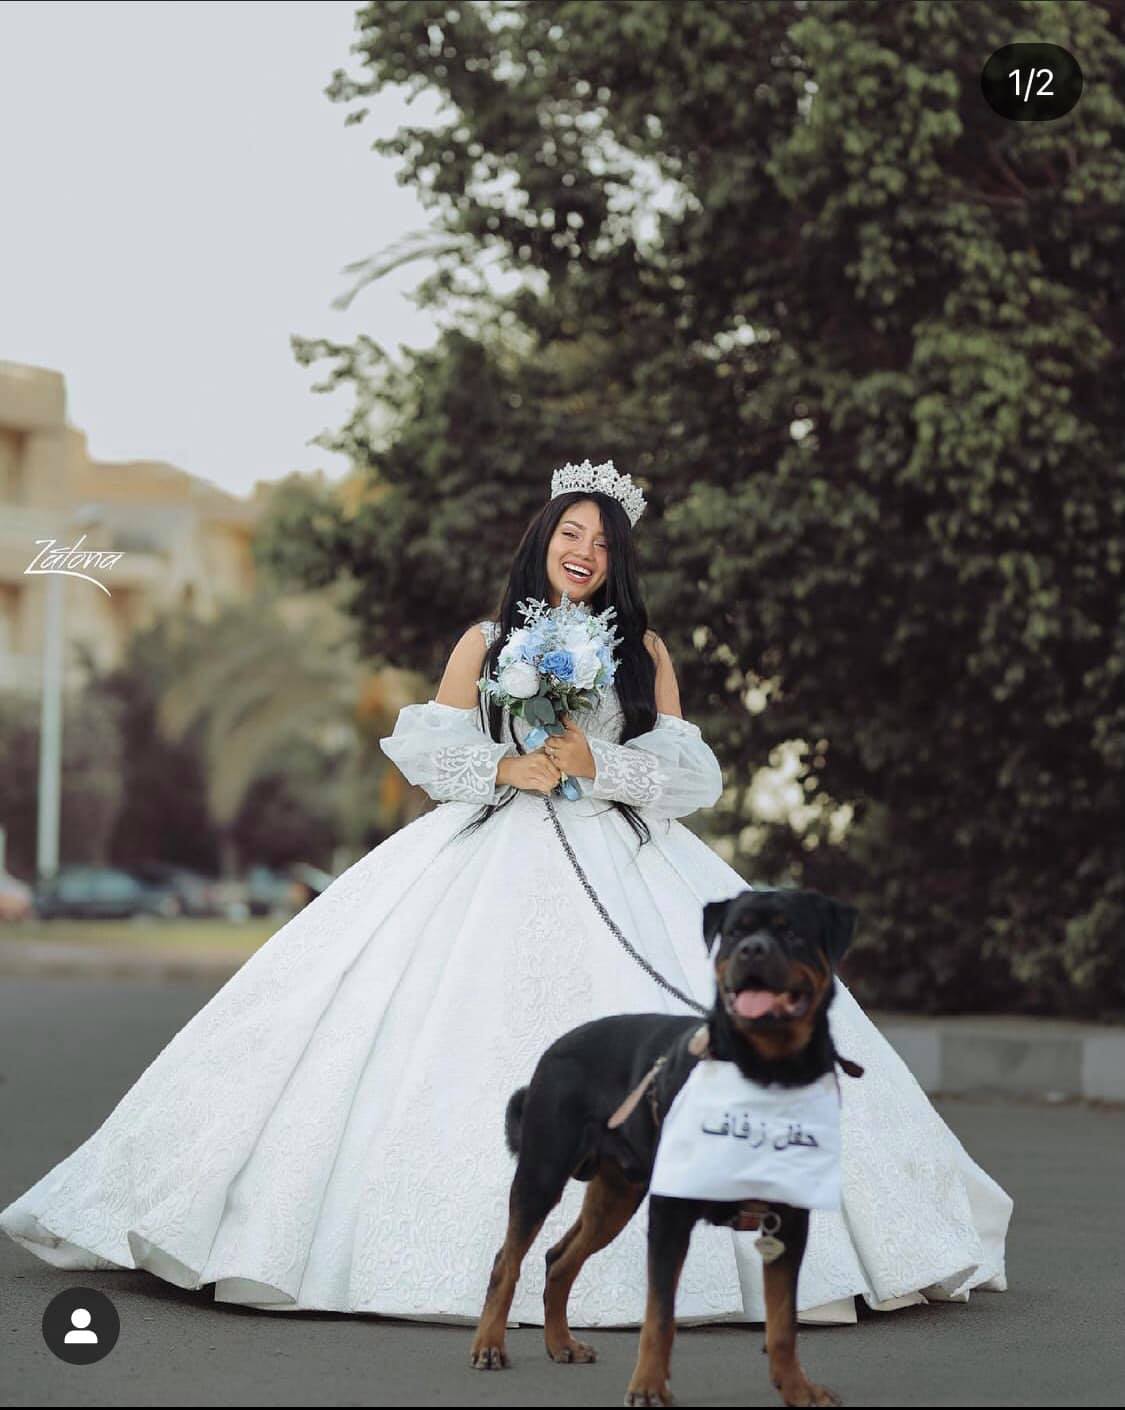 زواج البلوجر هبة مبروك من كلب 